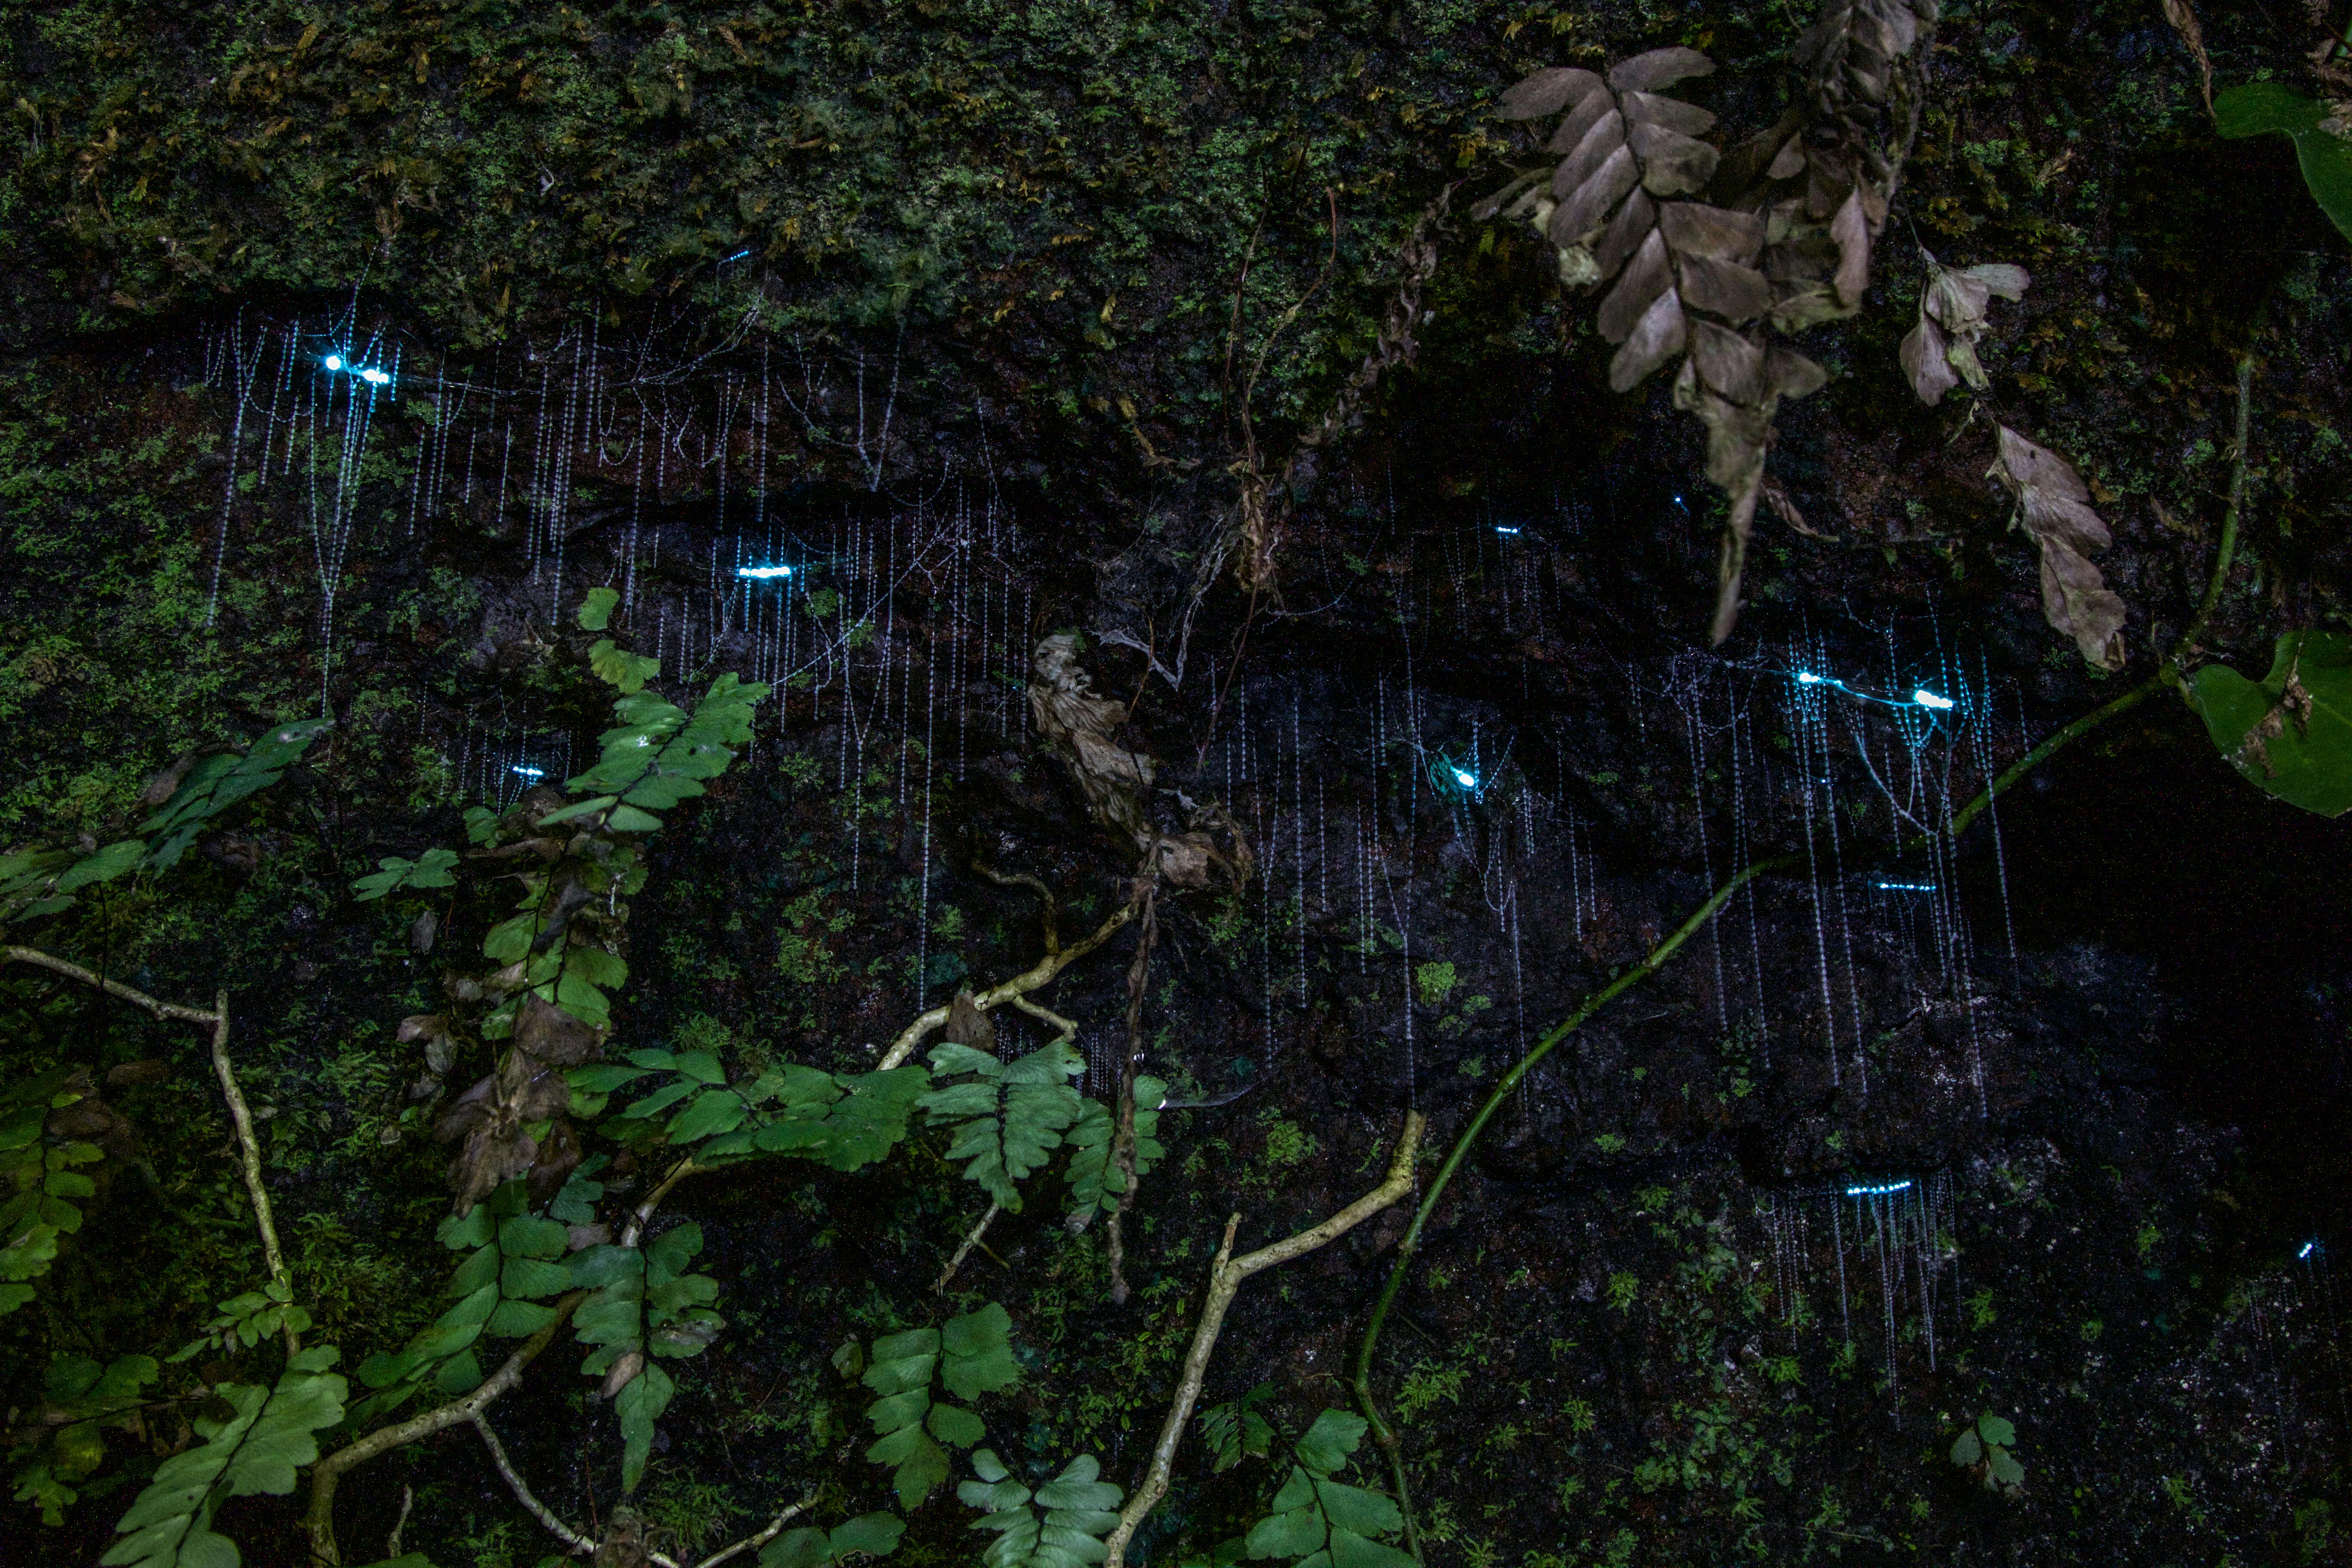 Abendliche Regenwald- und Glühwürmchentour